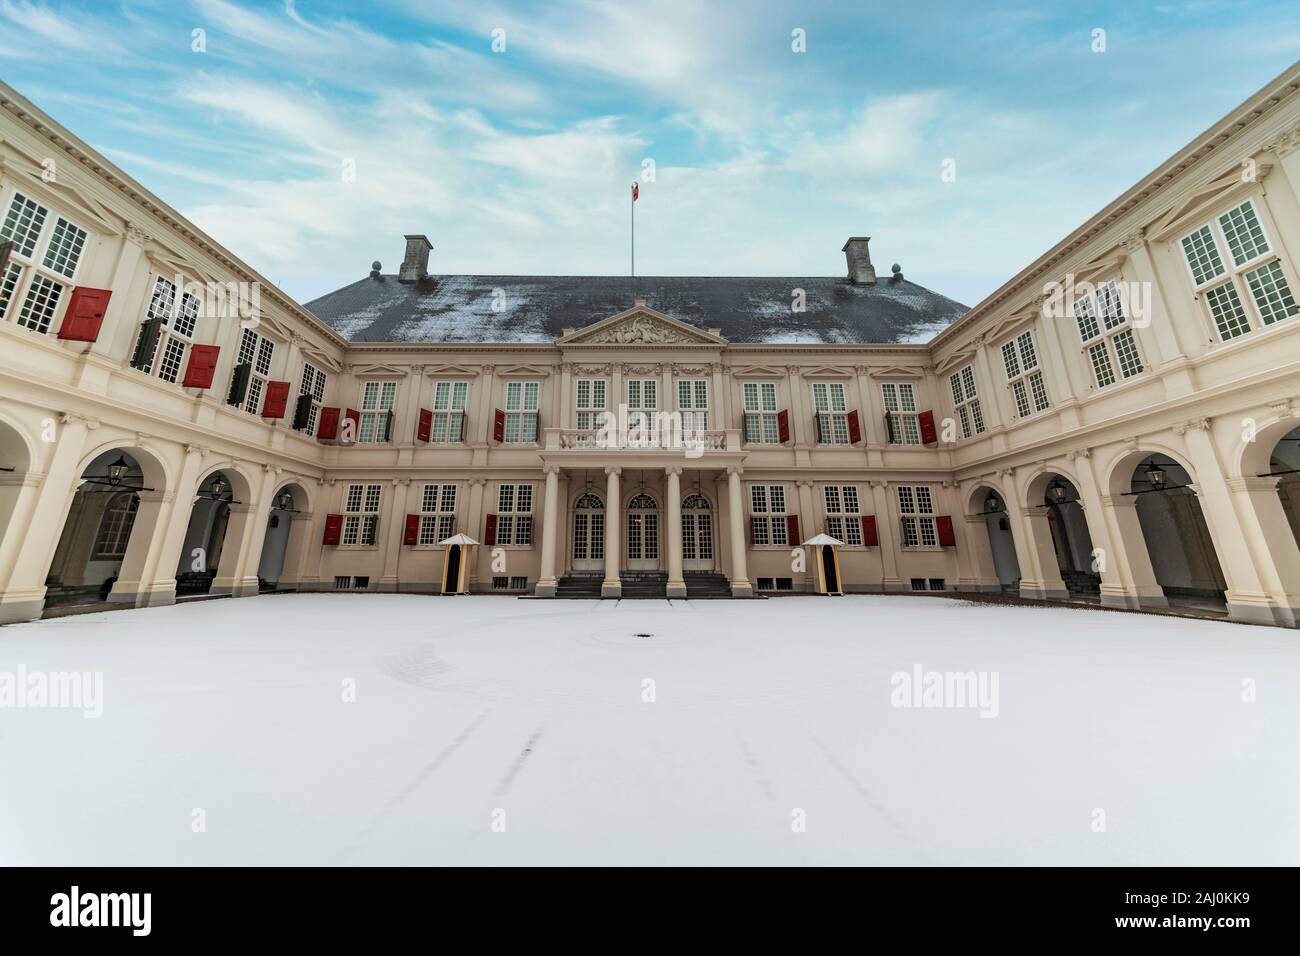 Den Haag, 22. Januar 2019 - Einer der offiziellen Arbeitsplatz für den niederländischen König, Willem-Alexander von Orange in Den Haag mit der Statue Willem van Stockfoto